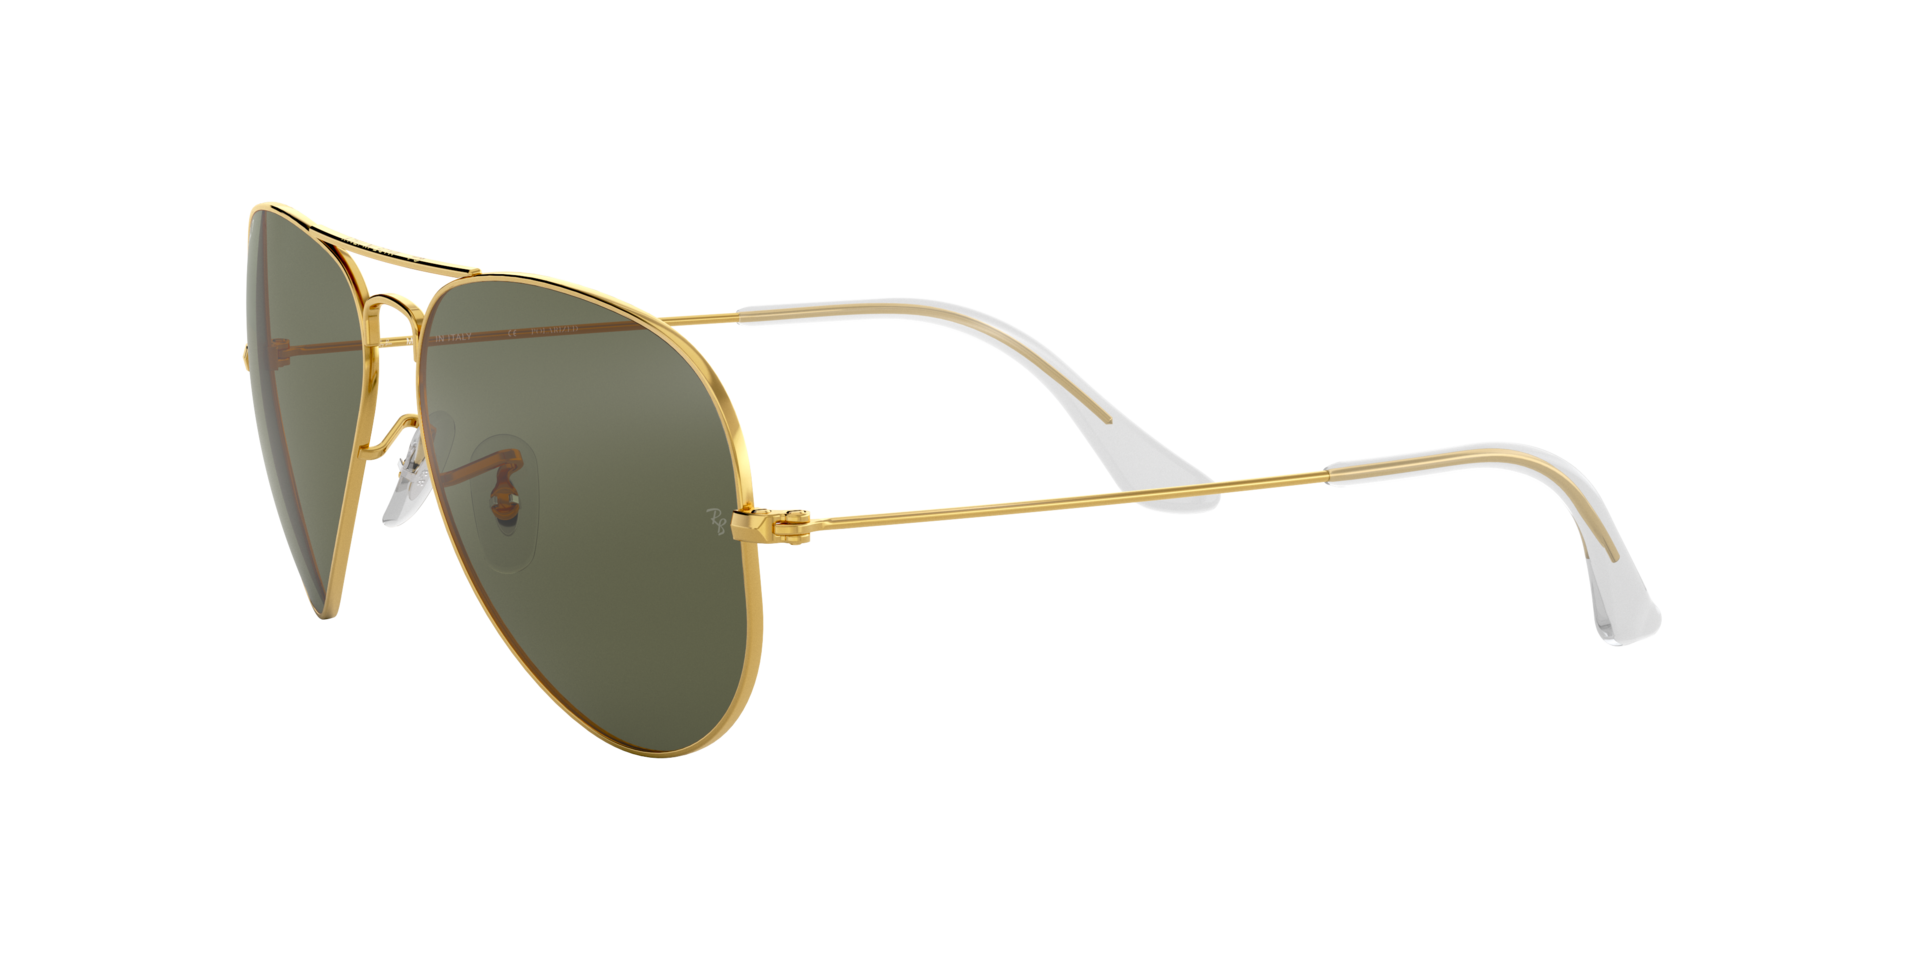 Ray Ban l 湯姆克魯斯同款-飛官框太陽眼鏡偏光墨綠/金(62mm)|Ray Ban 